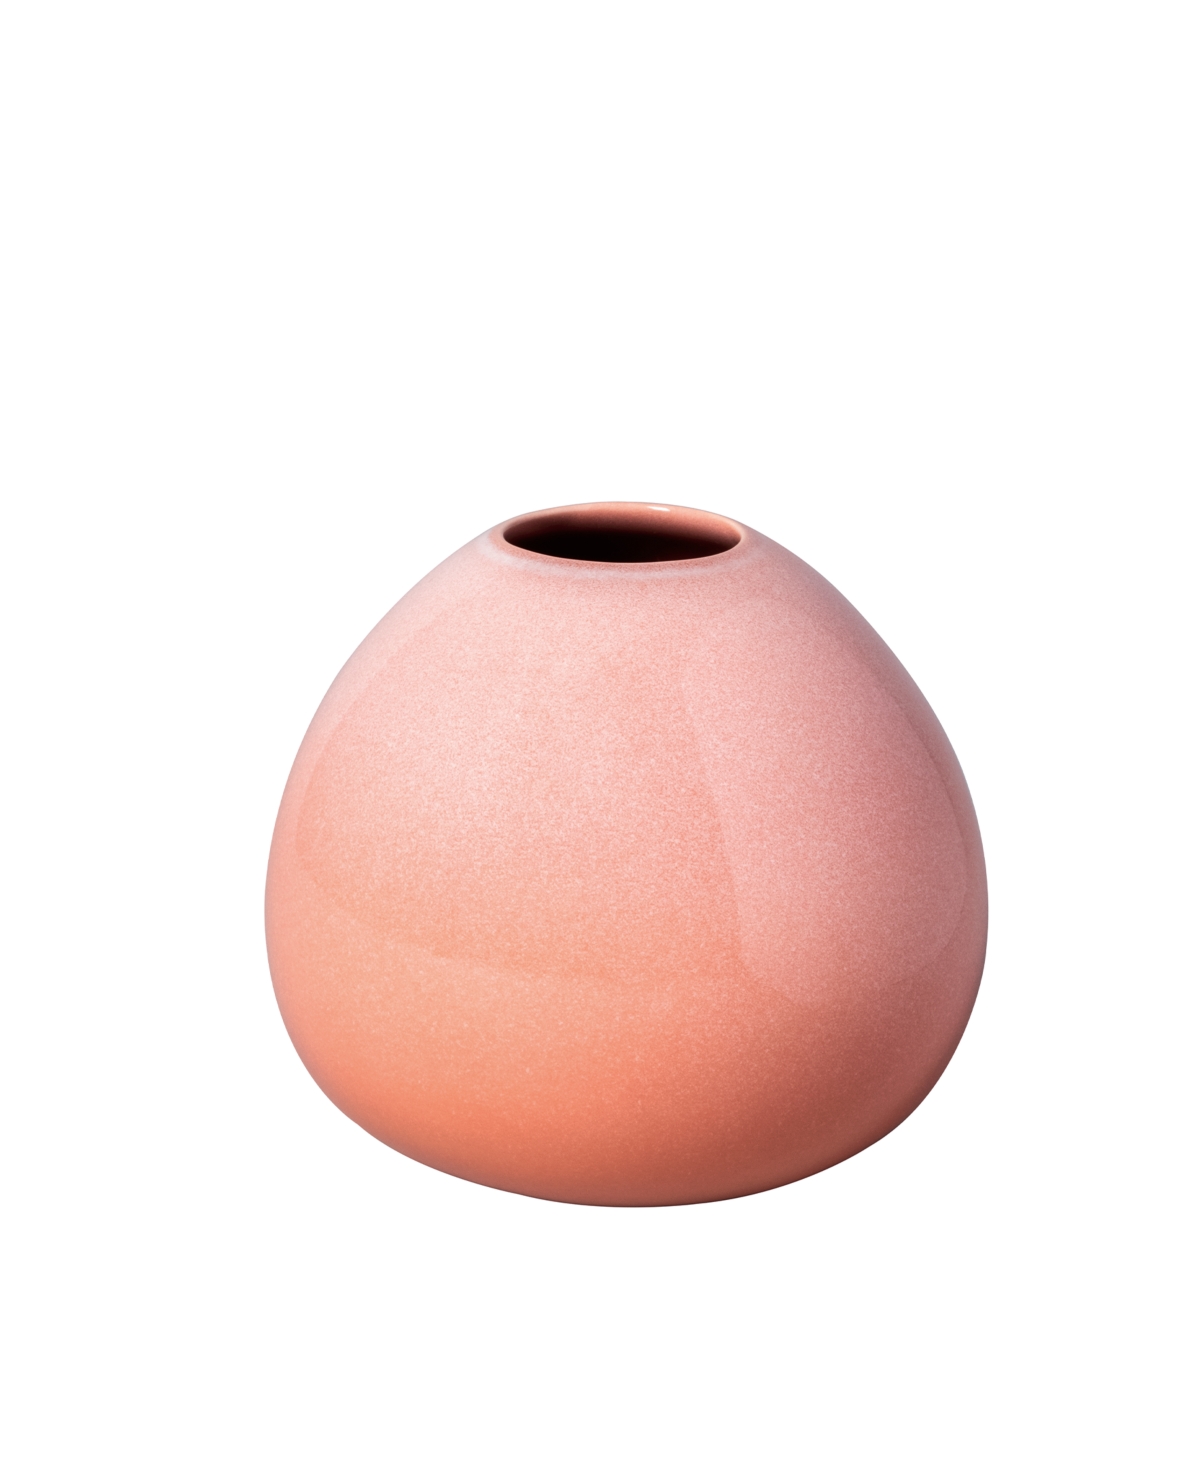 Villeroy & Boch Perlemor Home Drop Vase, Small In Coral